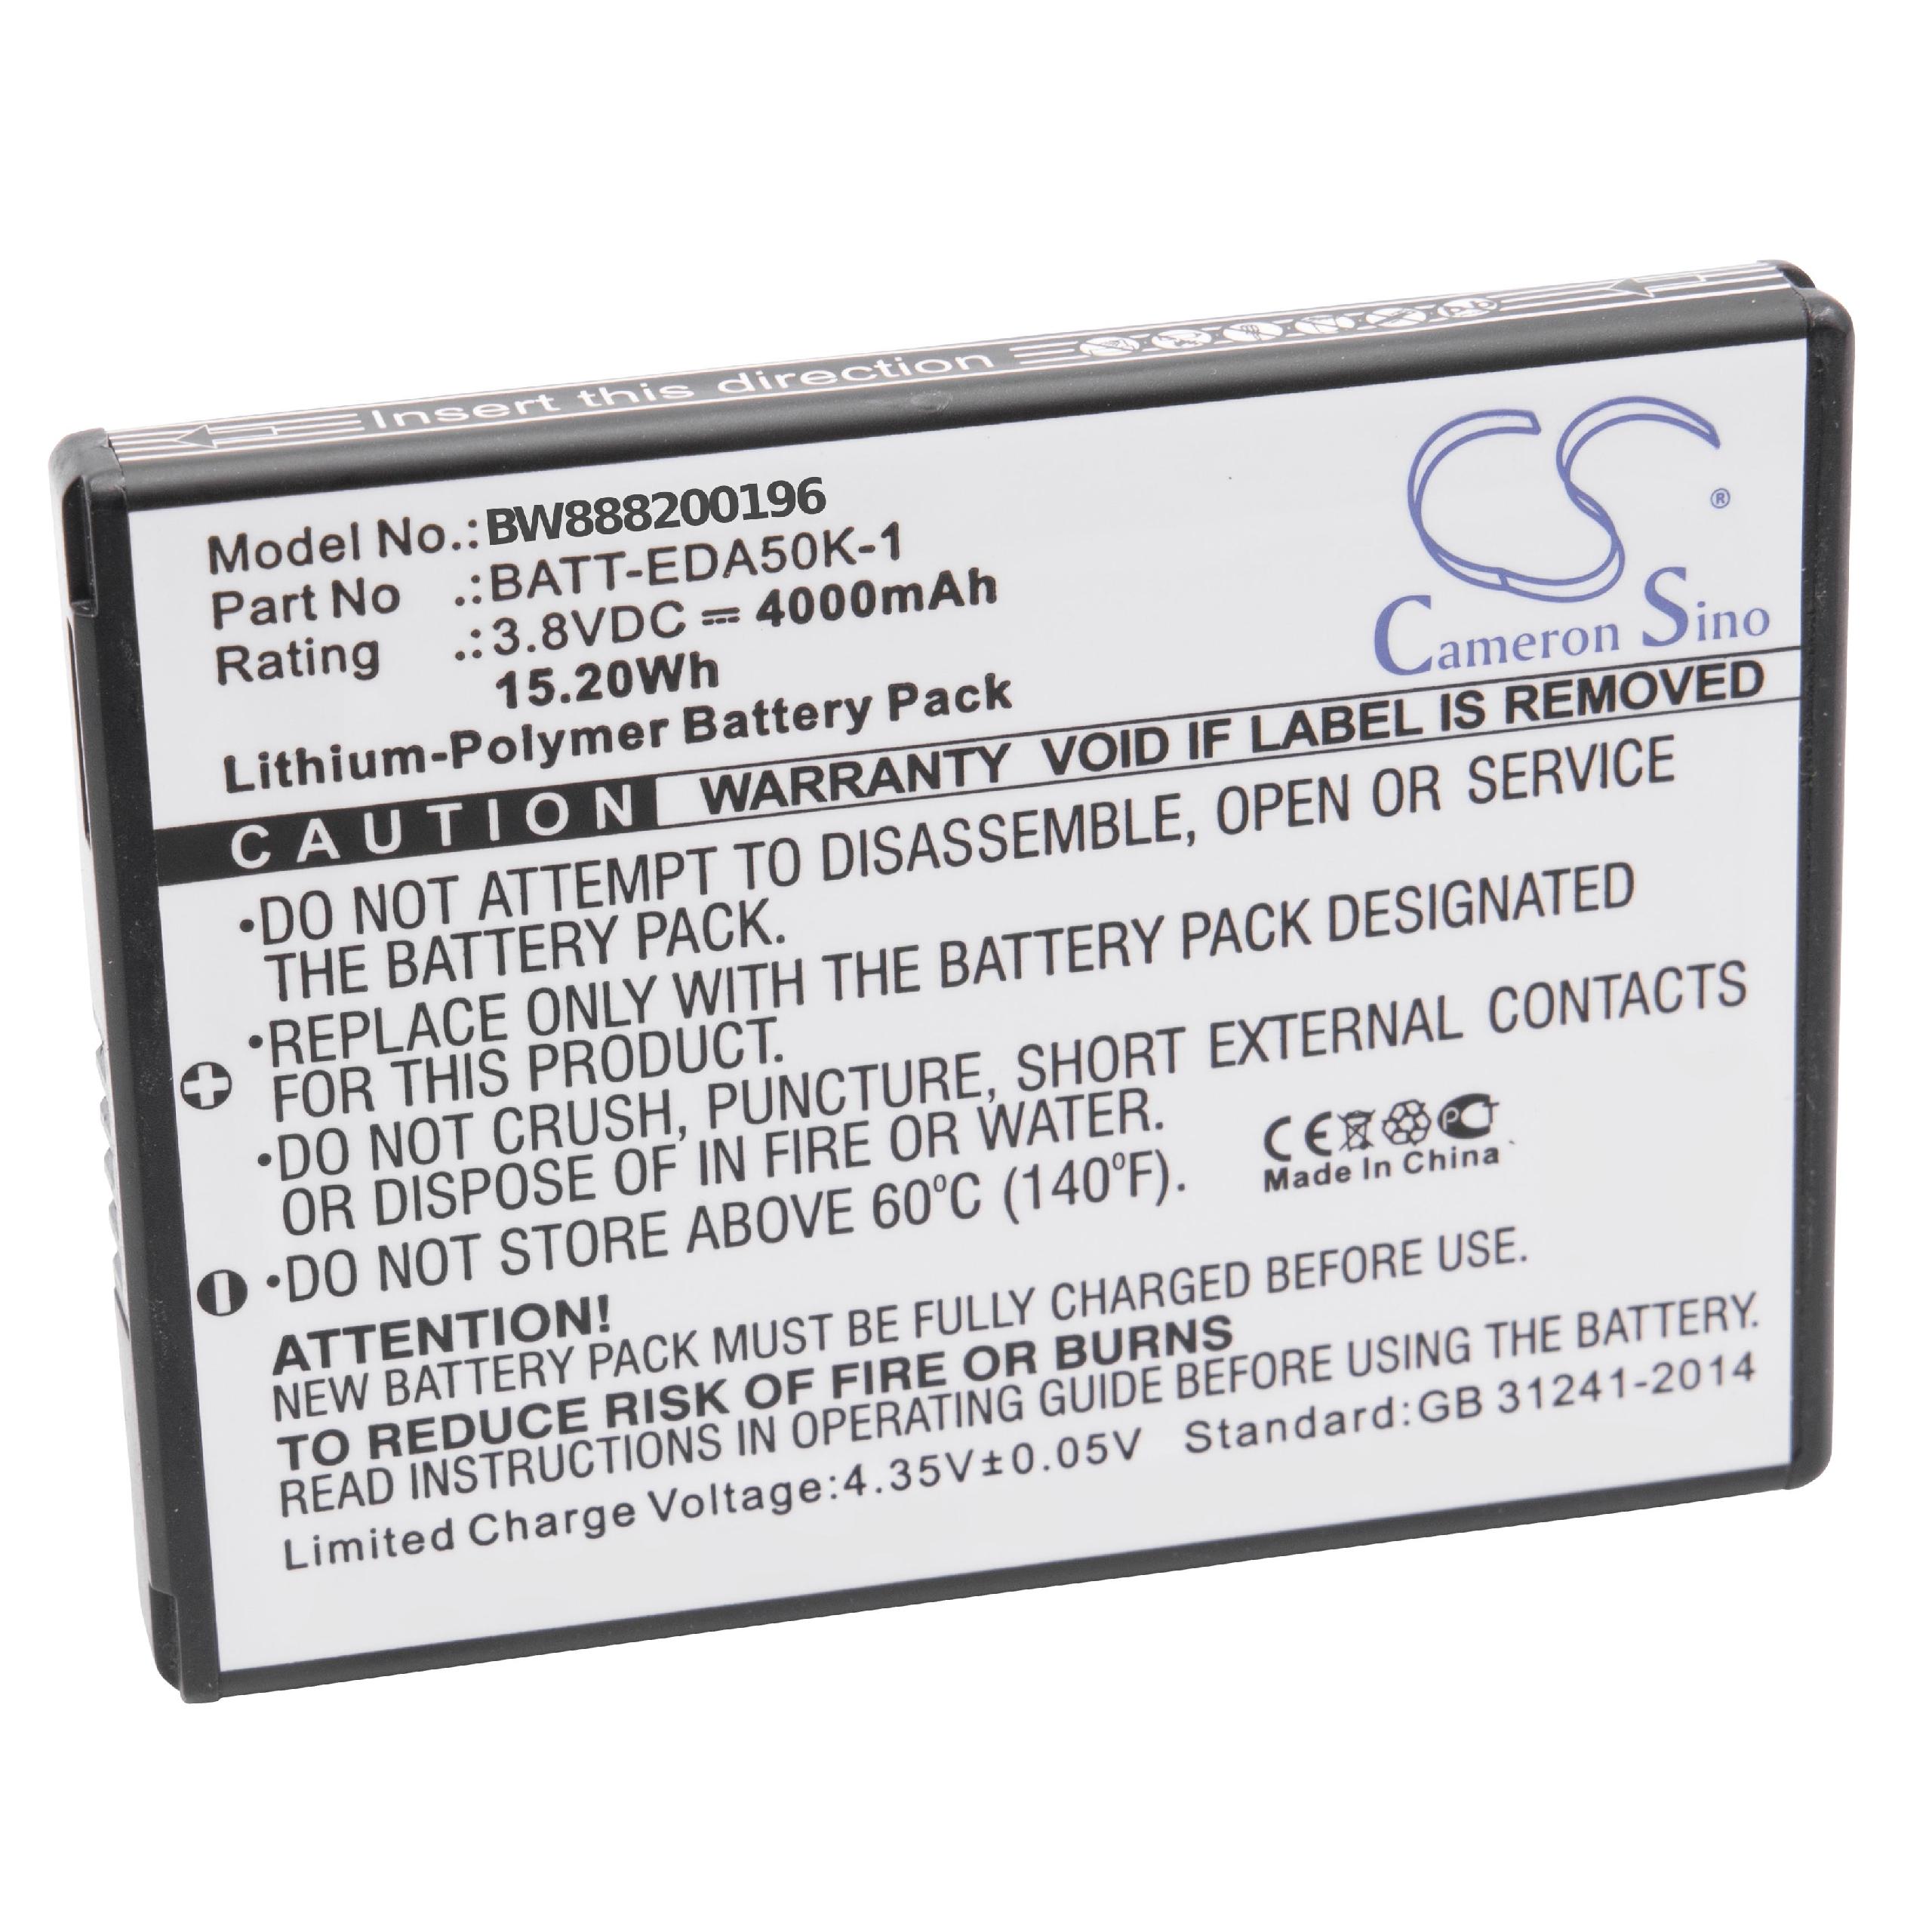 Batterie remplace Honeywell 50134176-001, 50129589-001 pour scanner de code-barre - 4000mAh 3,8V Li-polymère